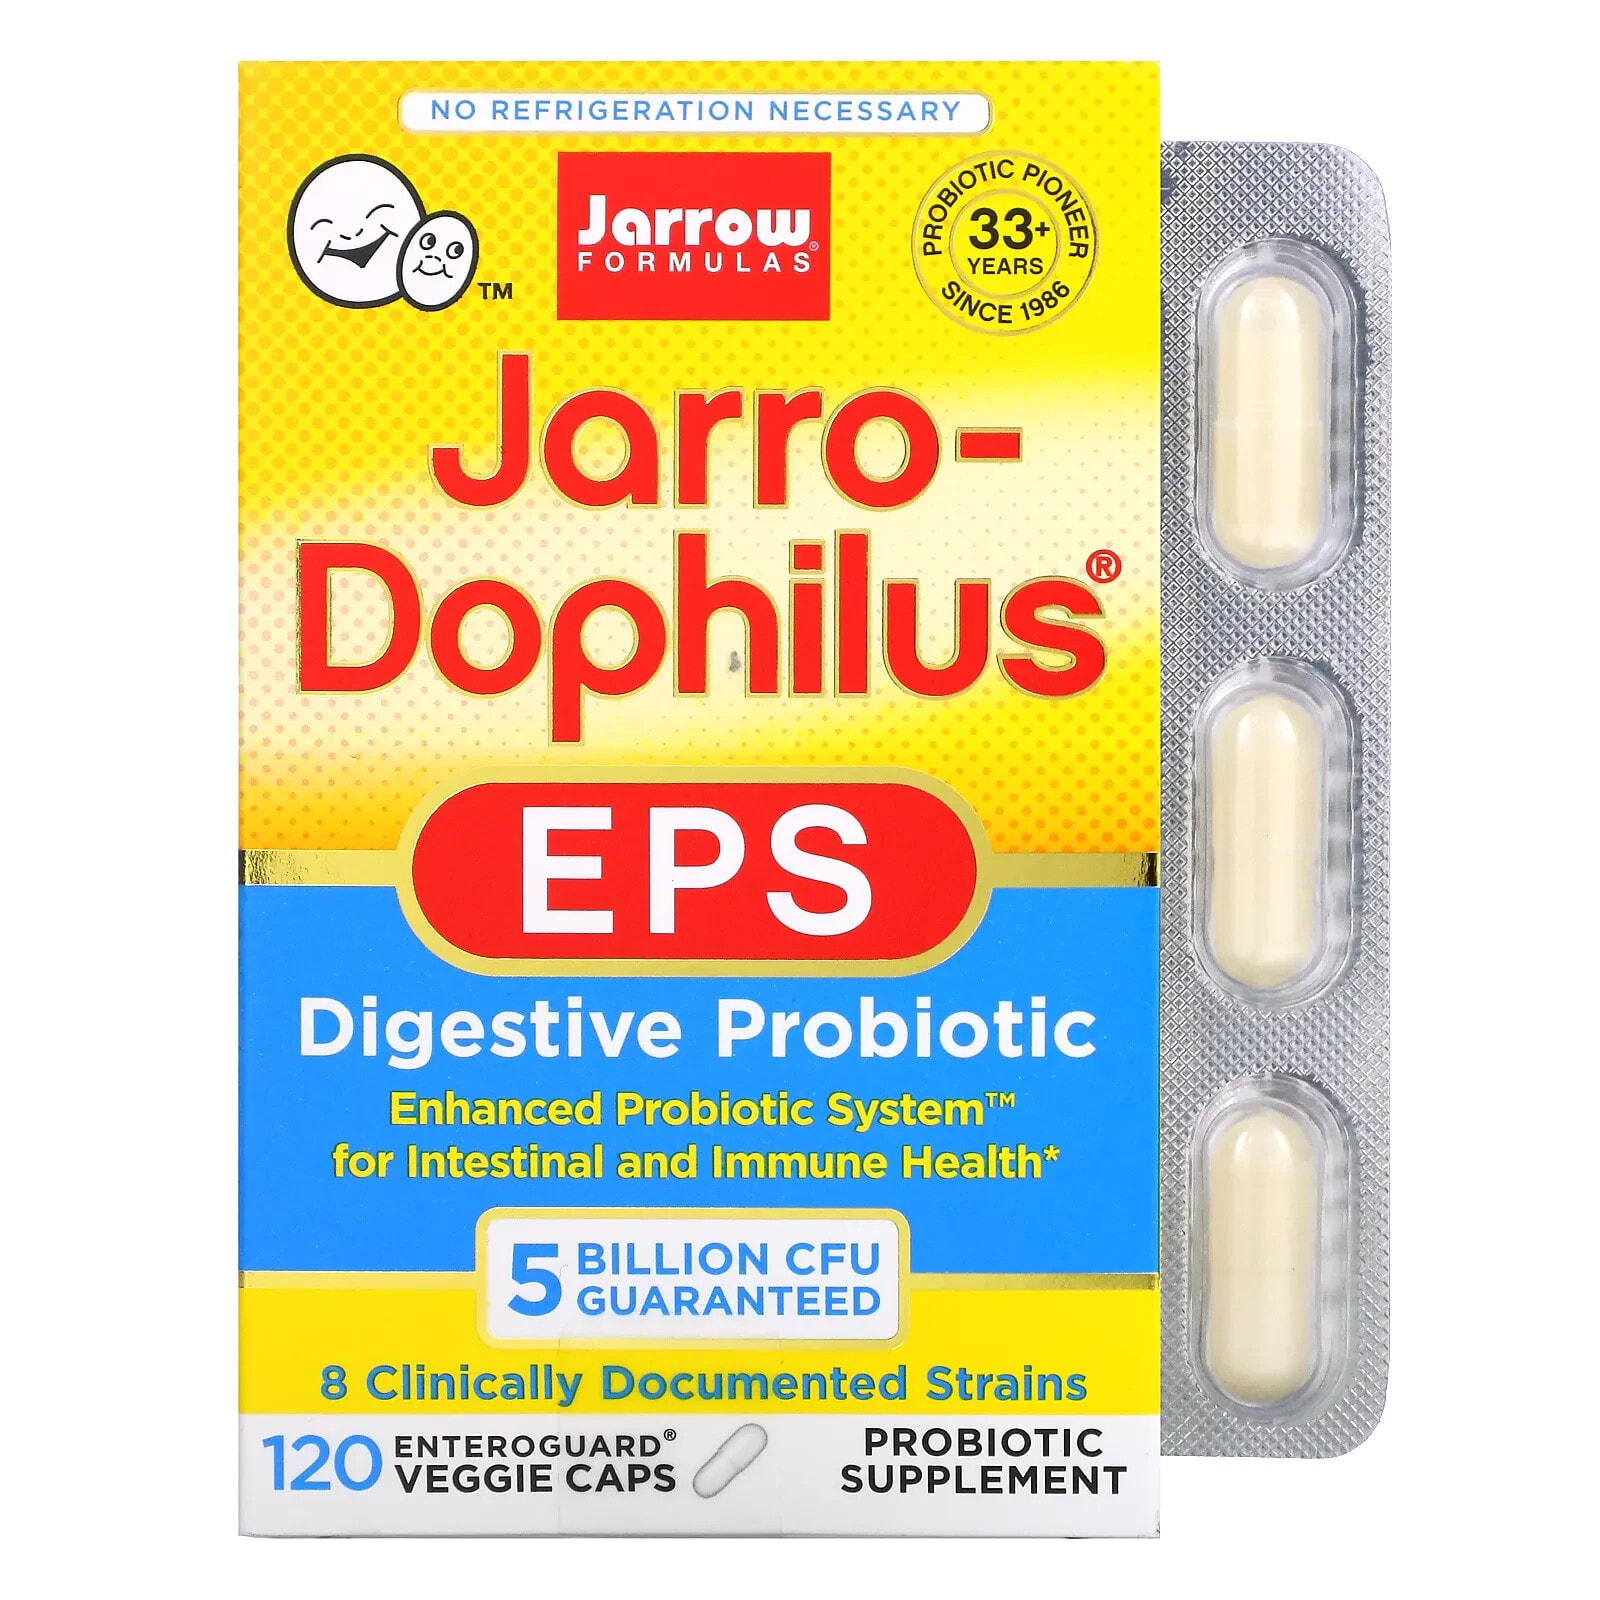 джэрроу формулас, Jarro-Dophilus EPS, пробиотики, 25 млрд, 60 вегетарианских капсул с технологией Enteroguard